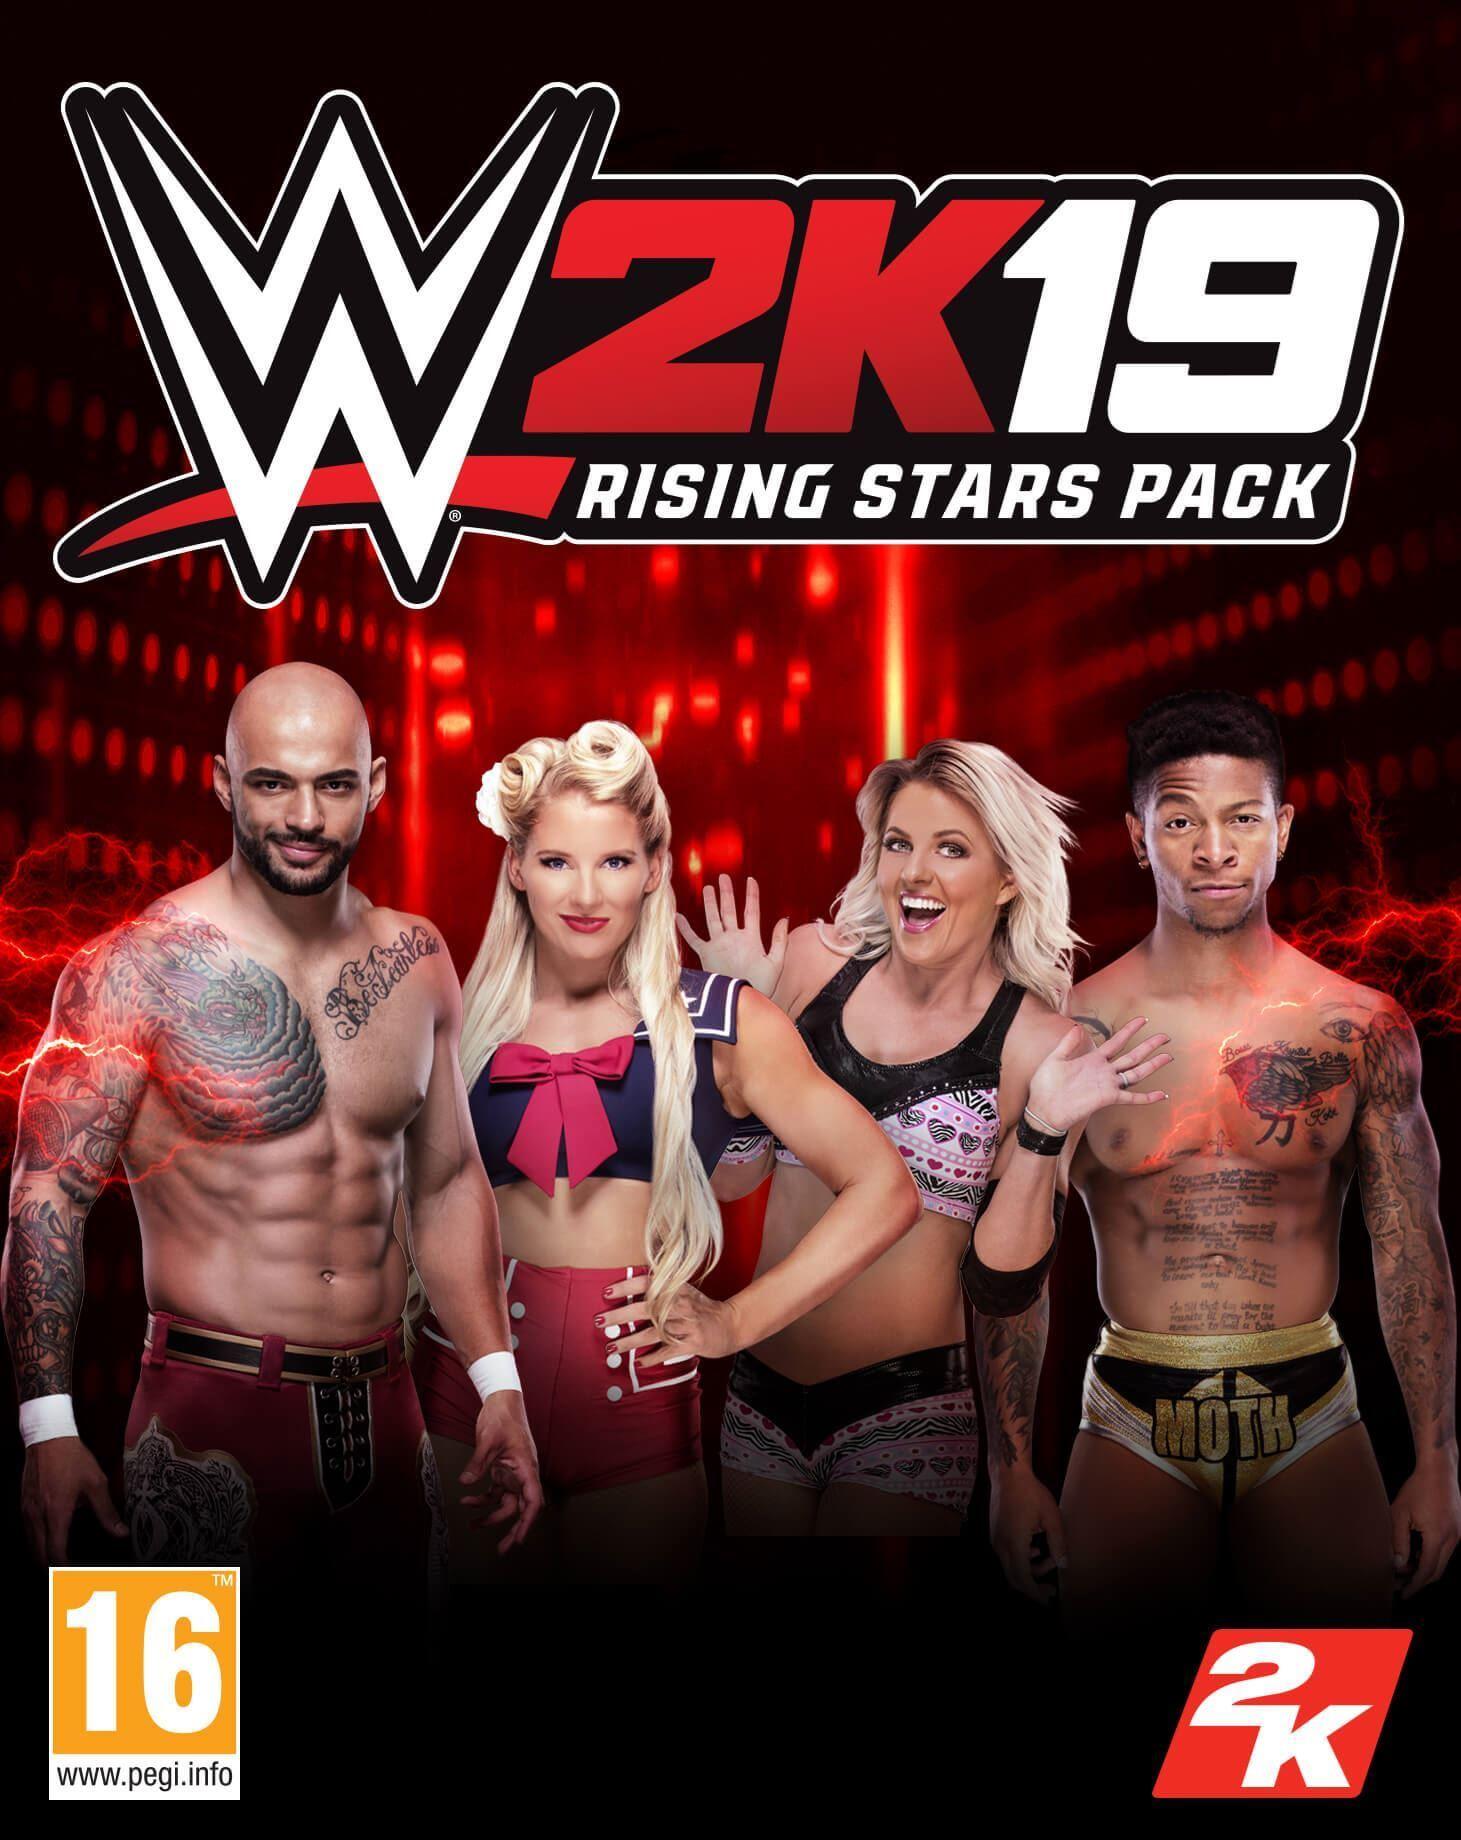 Afbeelding van WWE 2K19 Rising Stars Pack